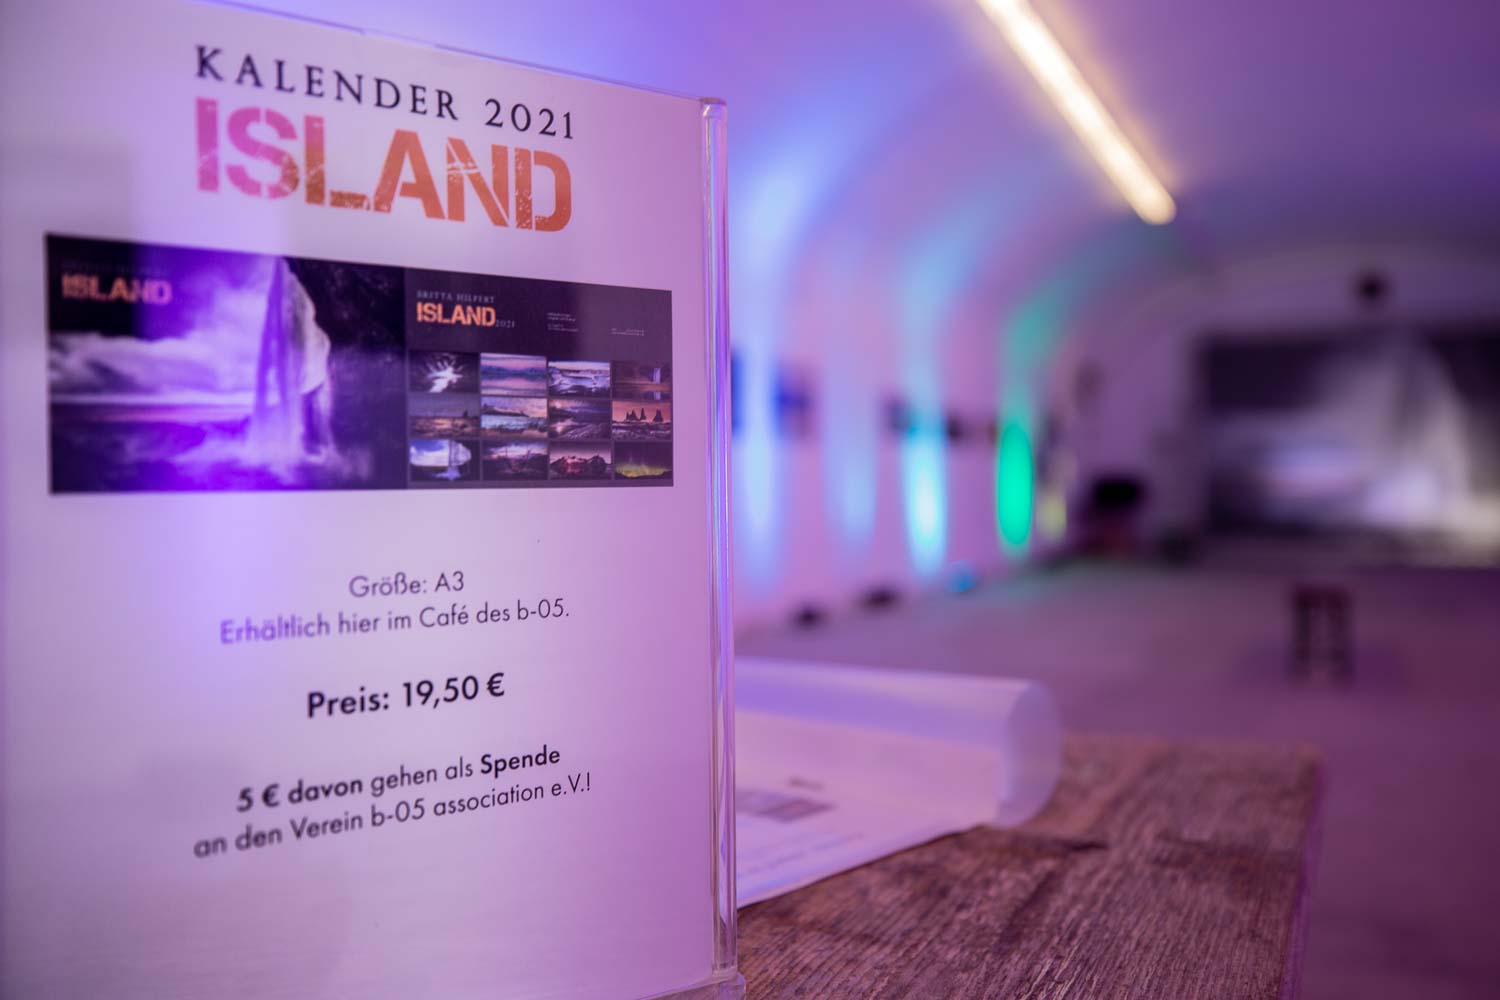 Kalender mit Ausstellungsbildern Island im Winter.